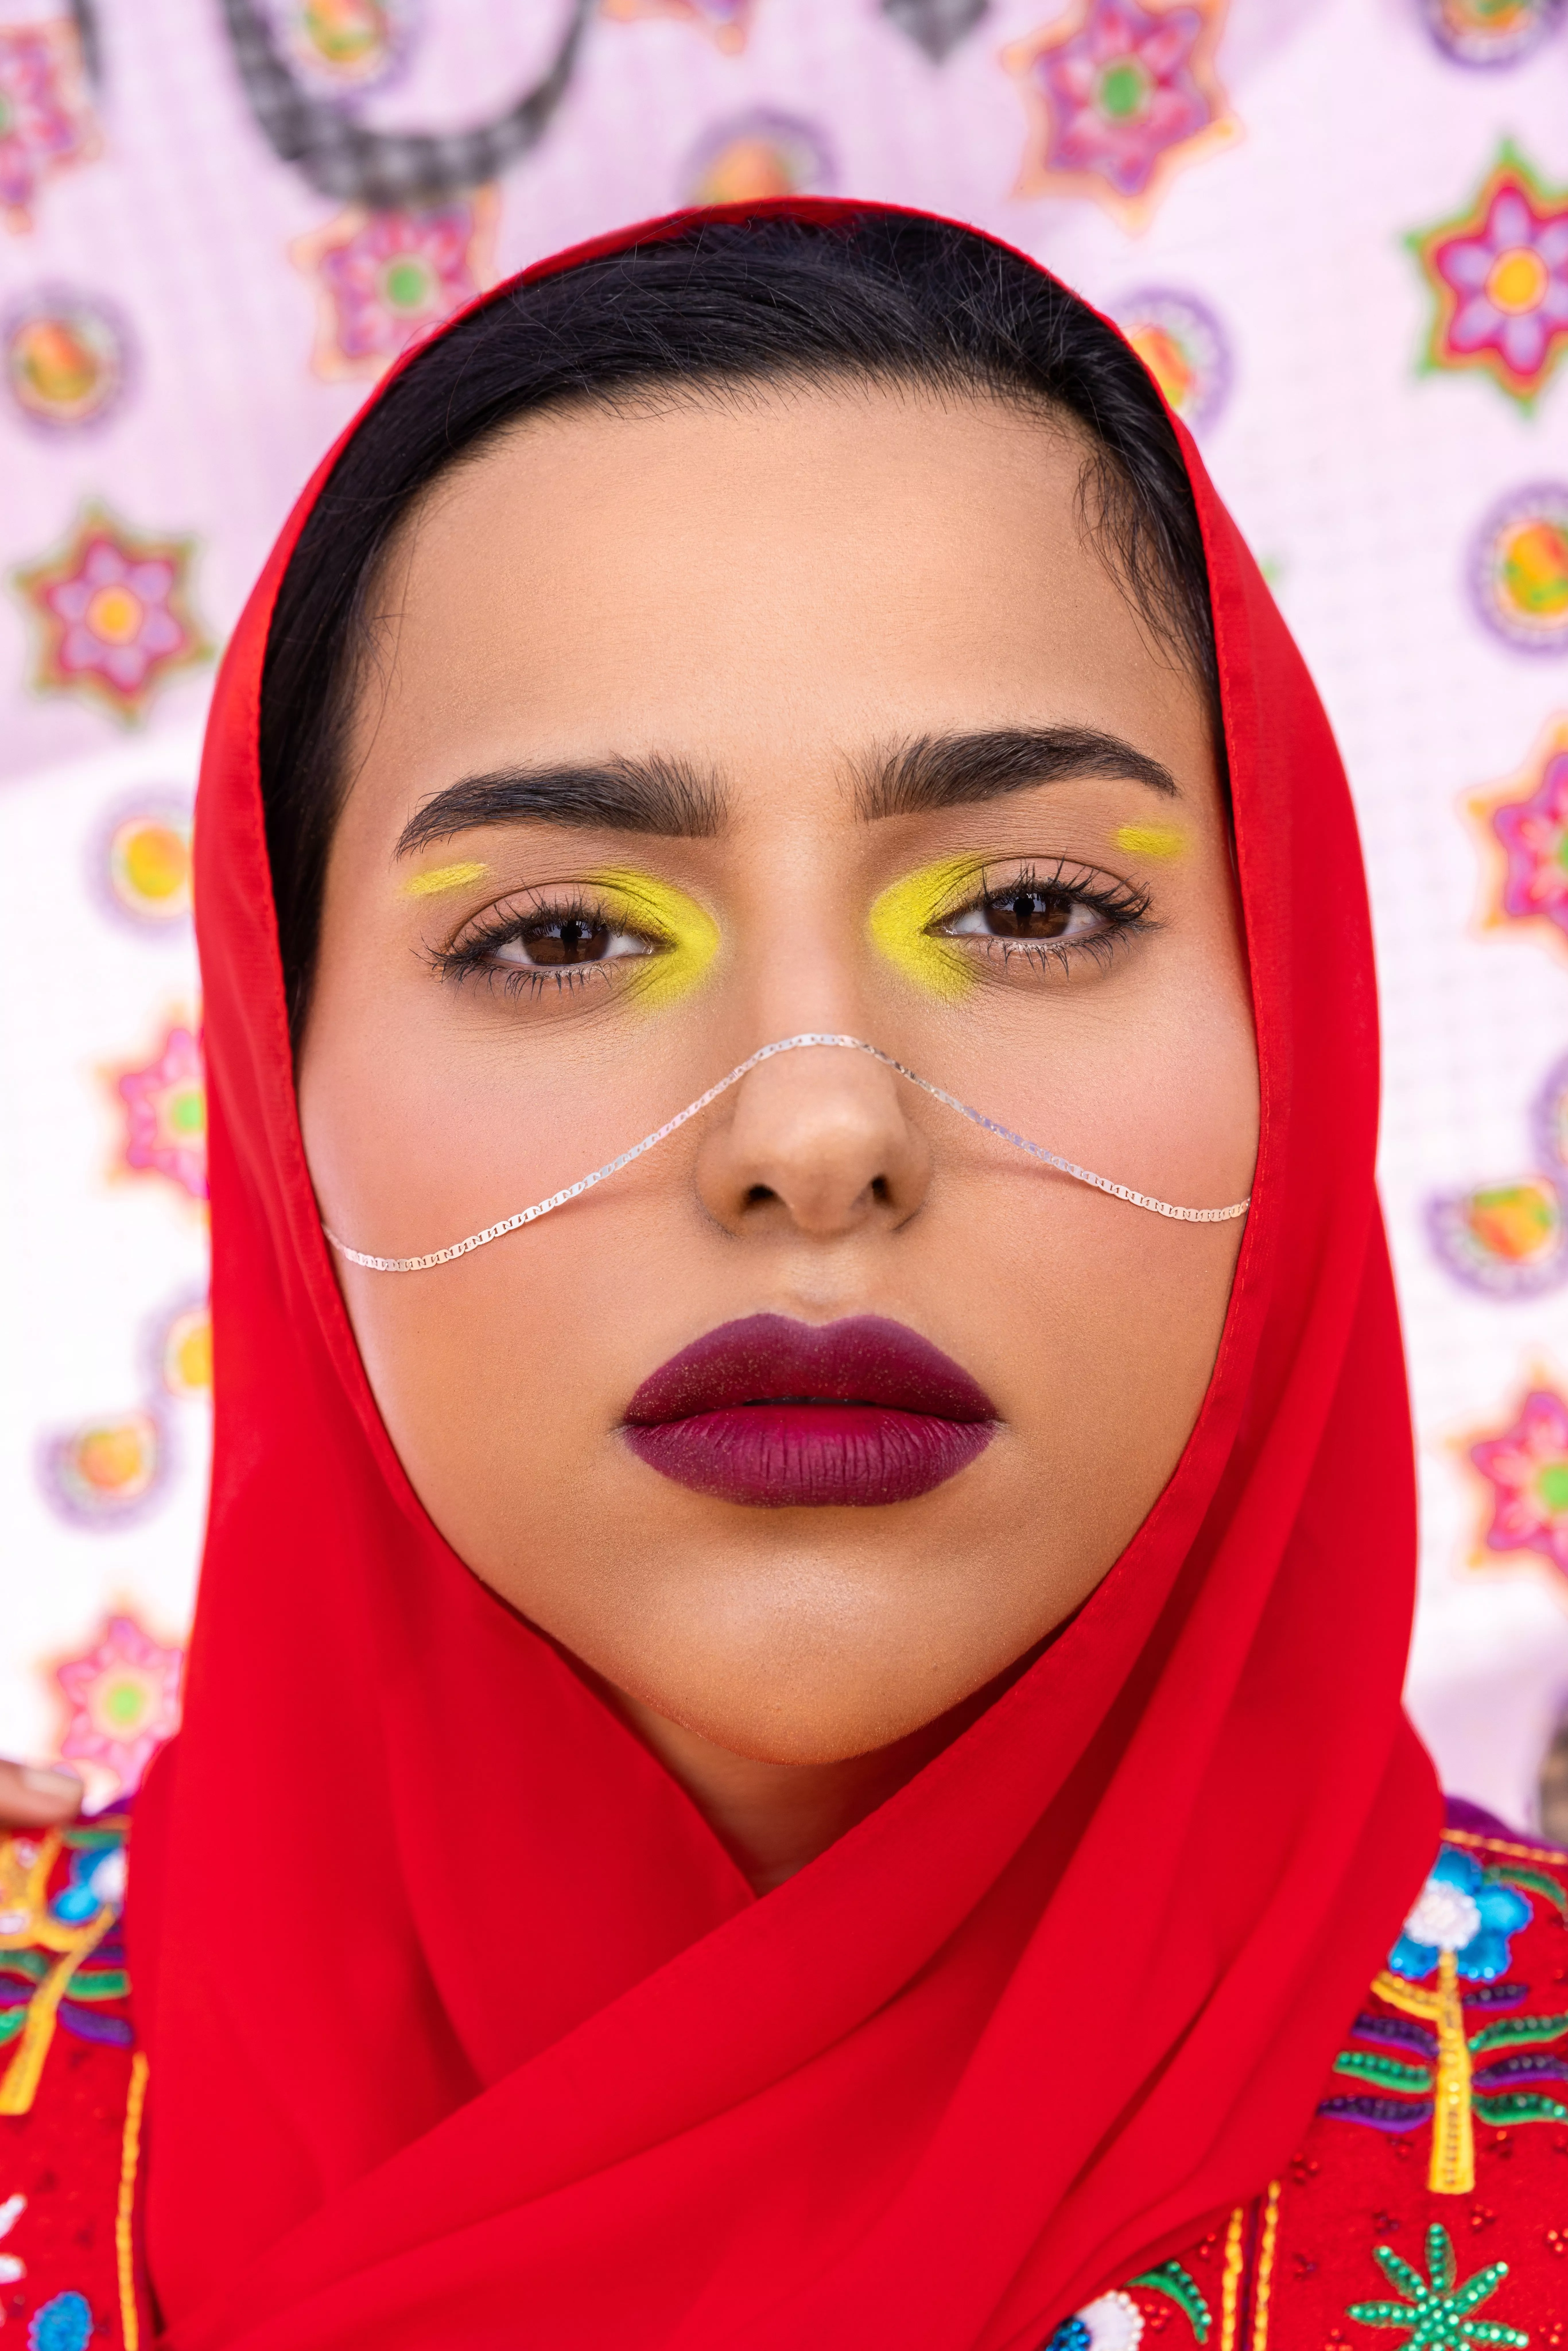 حملة سيفورا الرمضانية: قصة عن الجمال، التراث والحداثة